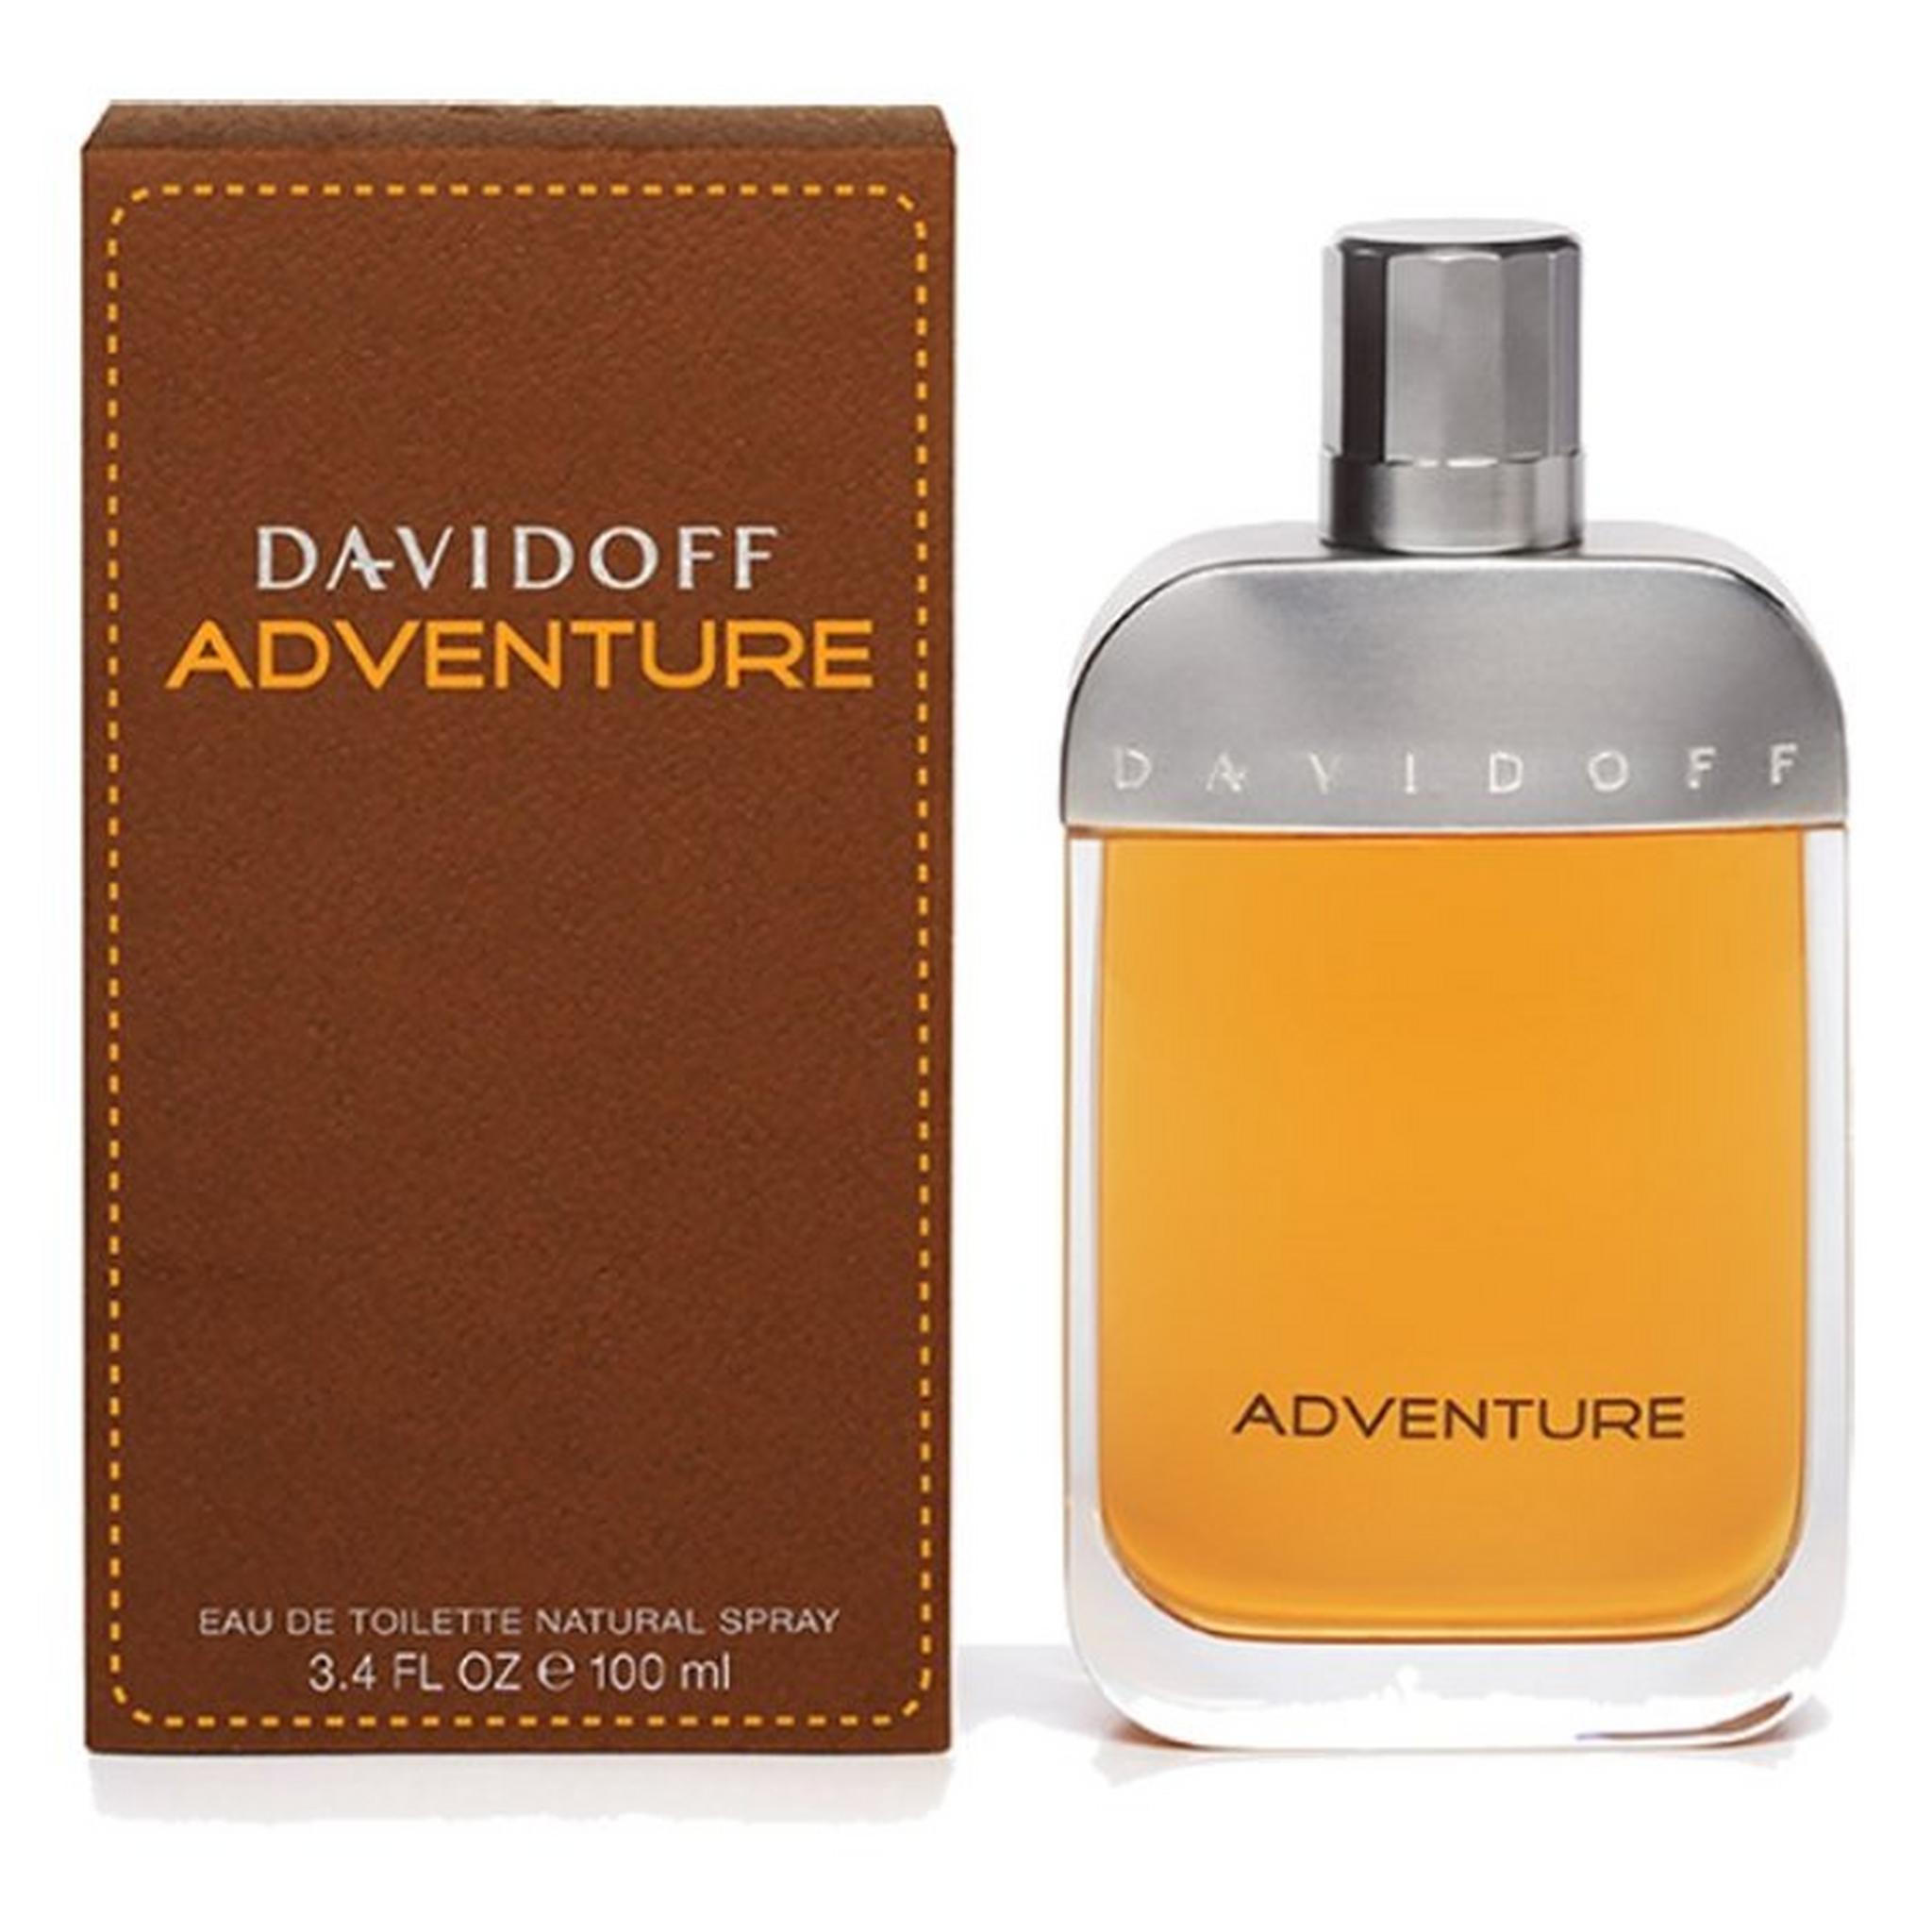 Adventure by Davidoff For Men 100 mL Eau de Toilette